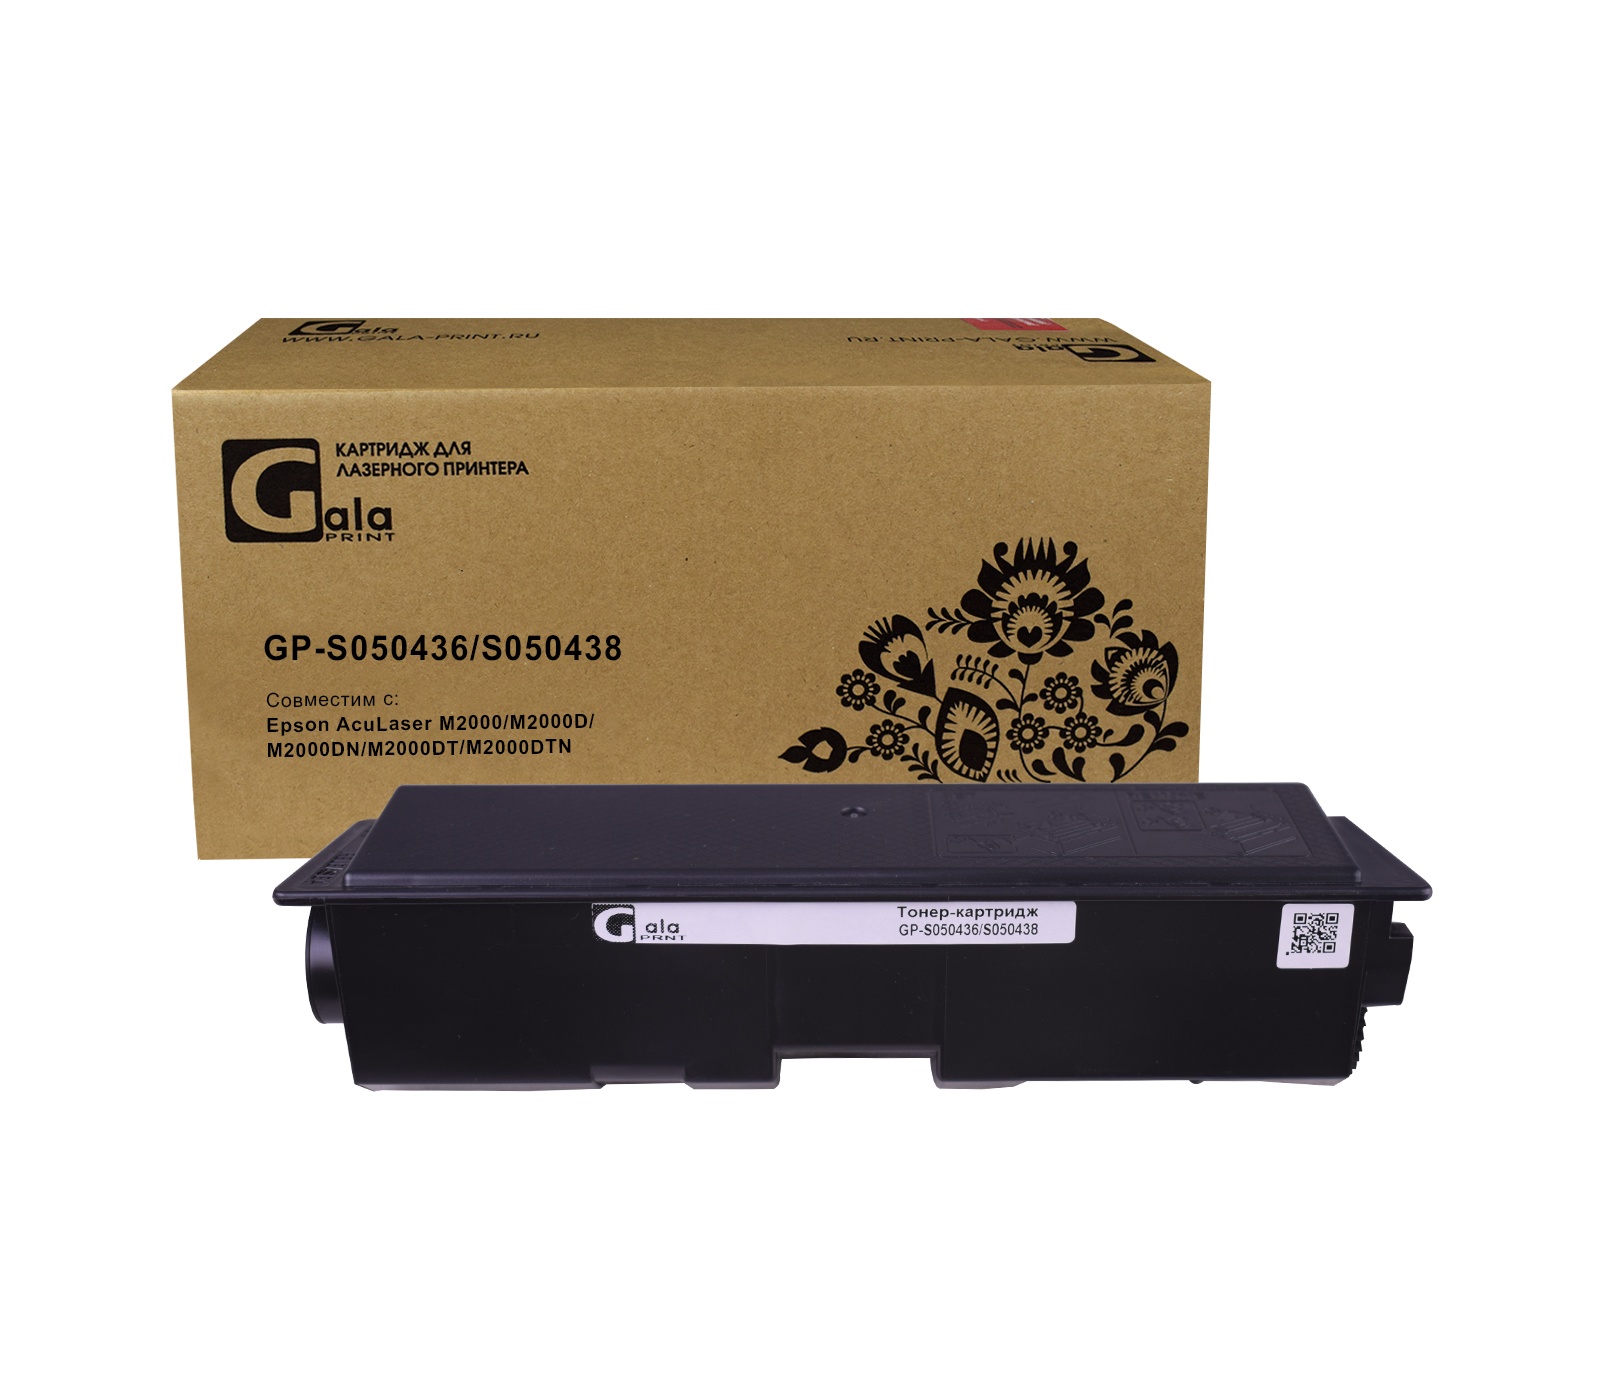 Картридж GP-S050436/S050438 для принтеров Epson AcuLaser M2000/M2000D/M2000DN/M2000DT/M2000DTN 3500 копий GalaPrint